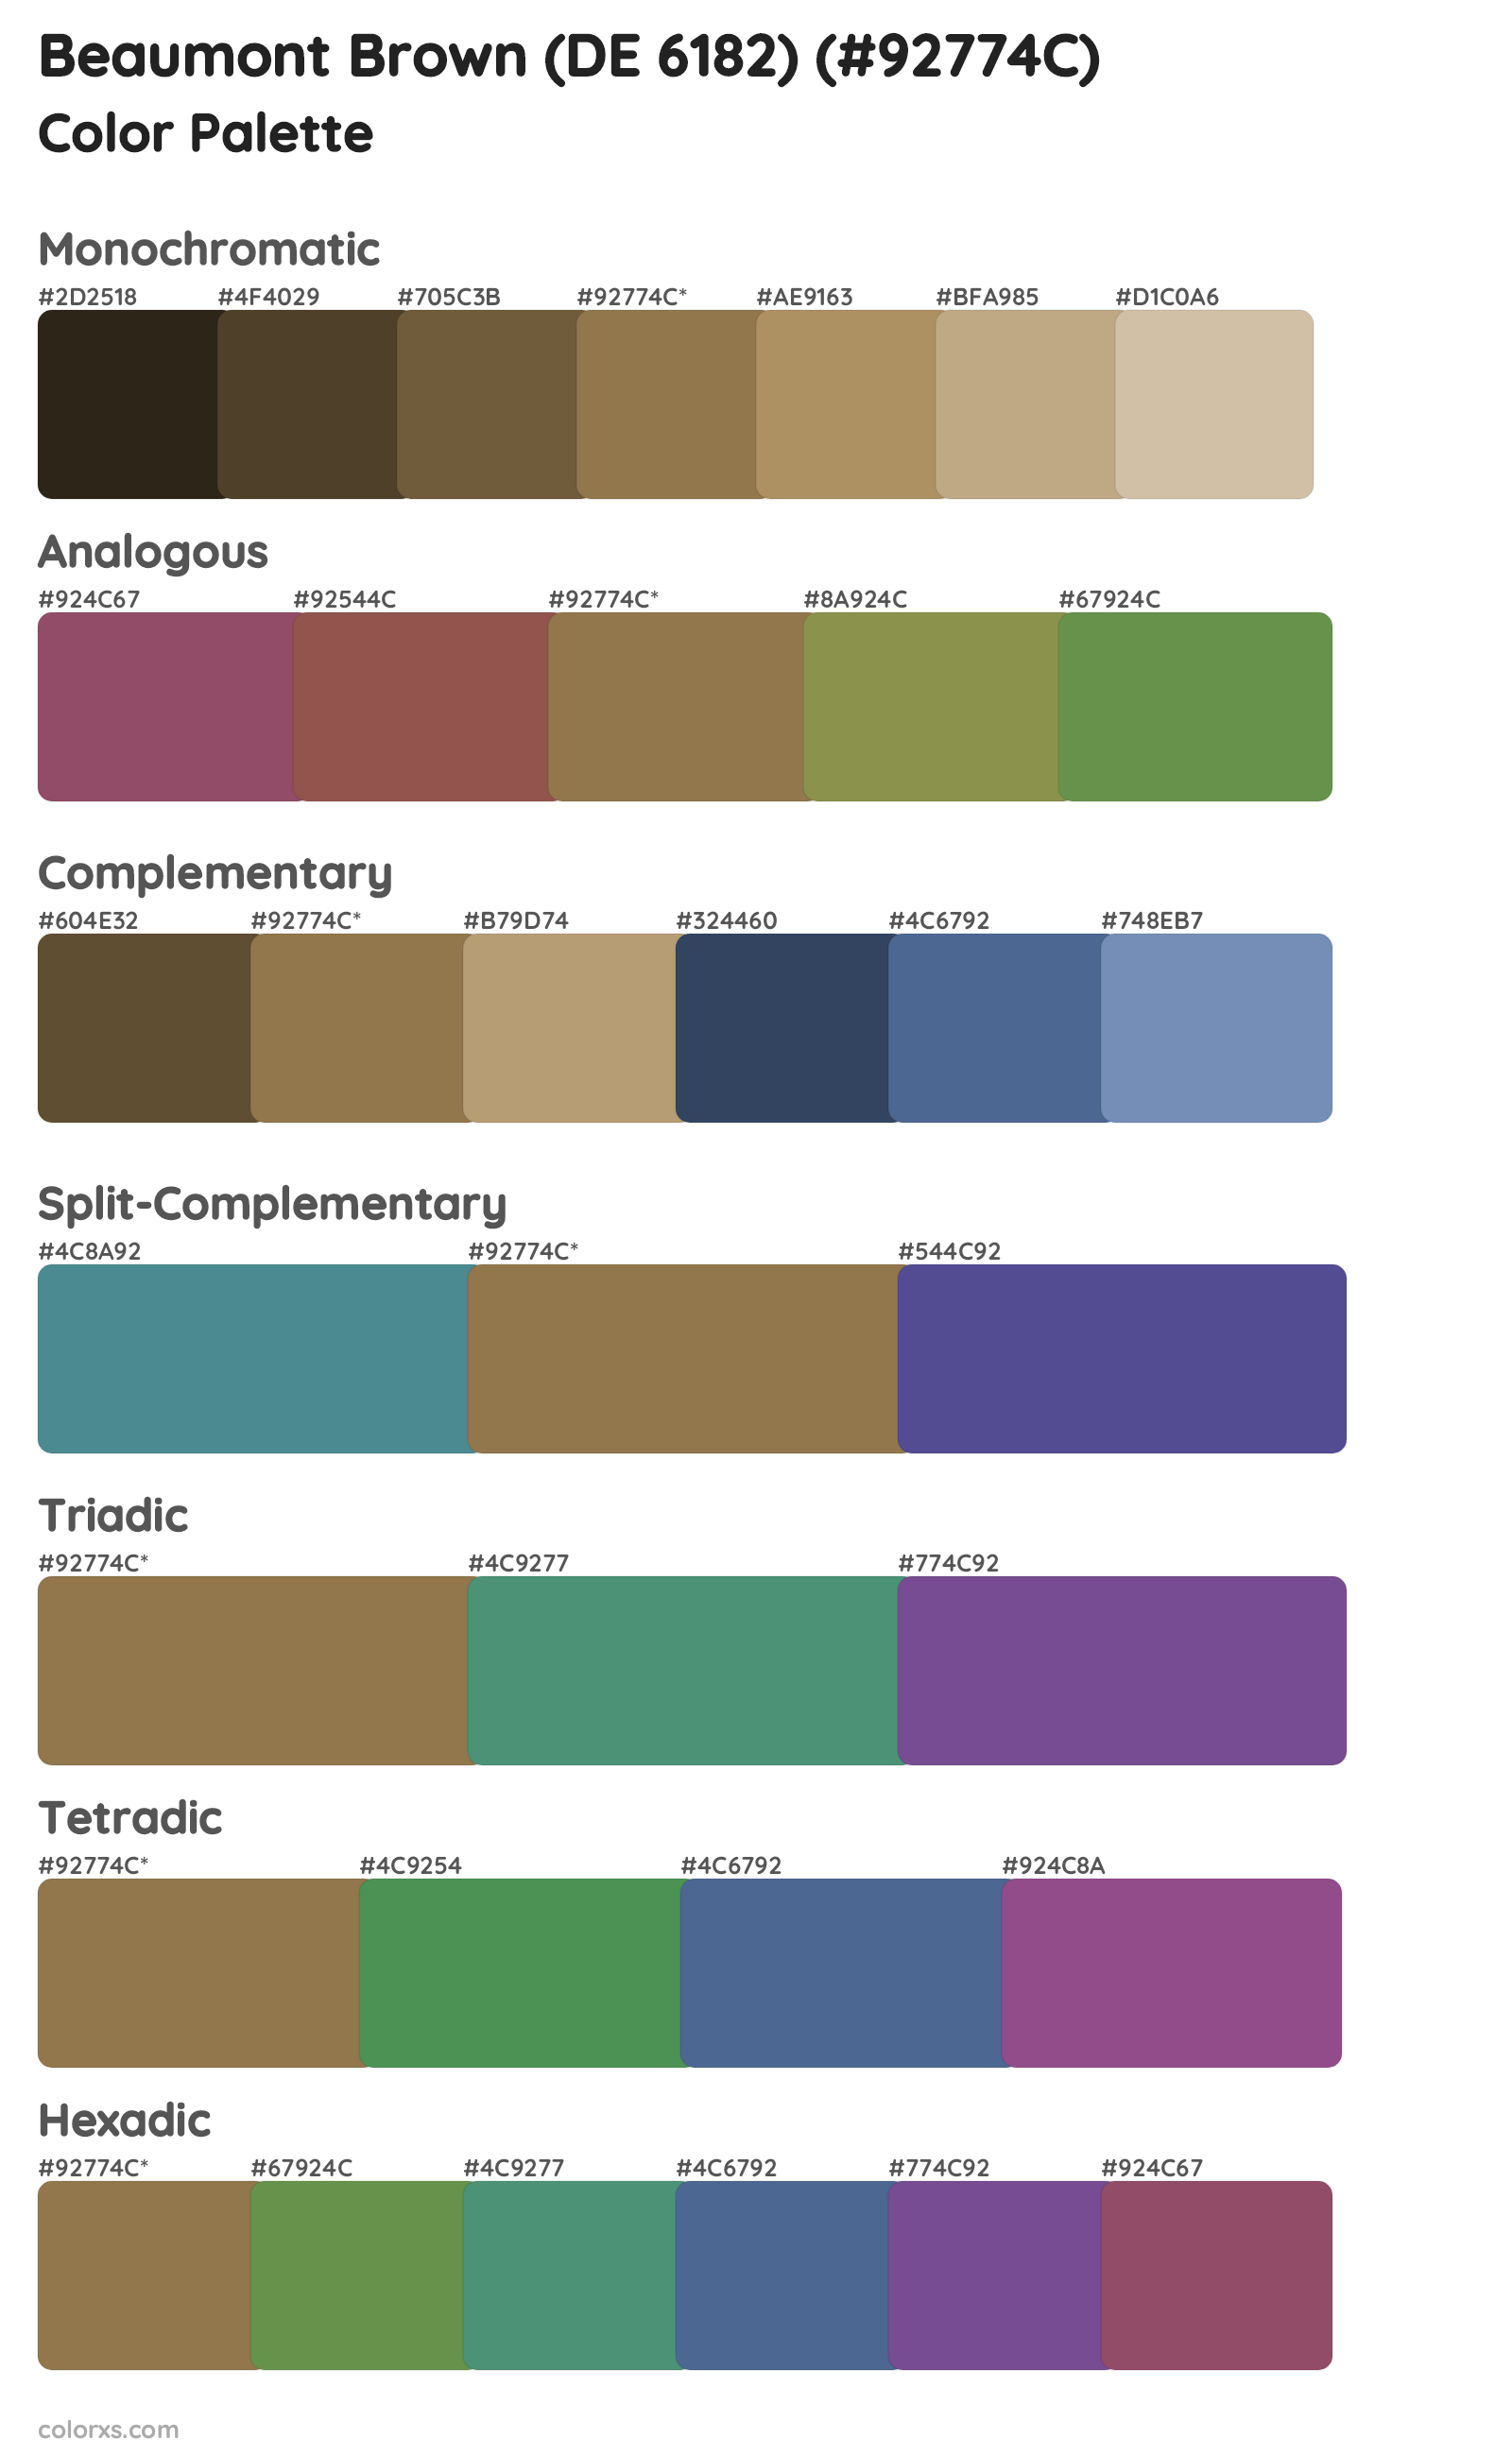 Beaumont Brown (DE 6182) Color Scheme Palettes